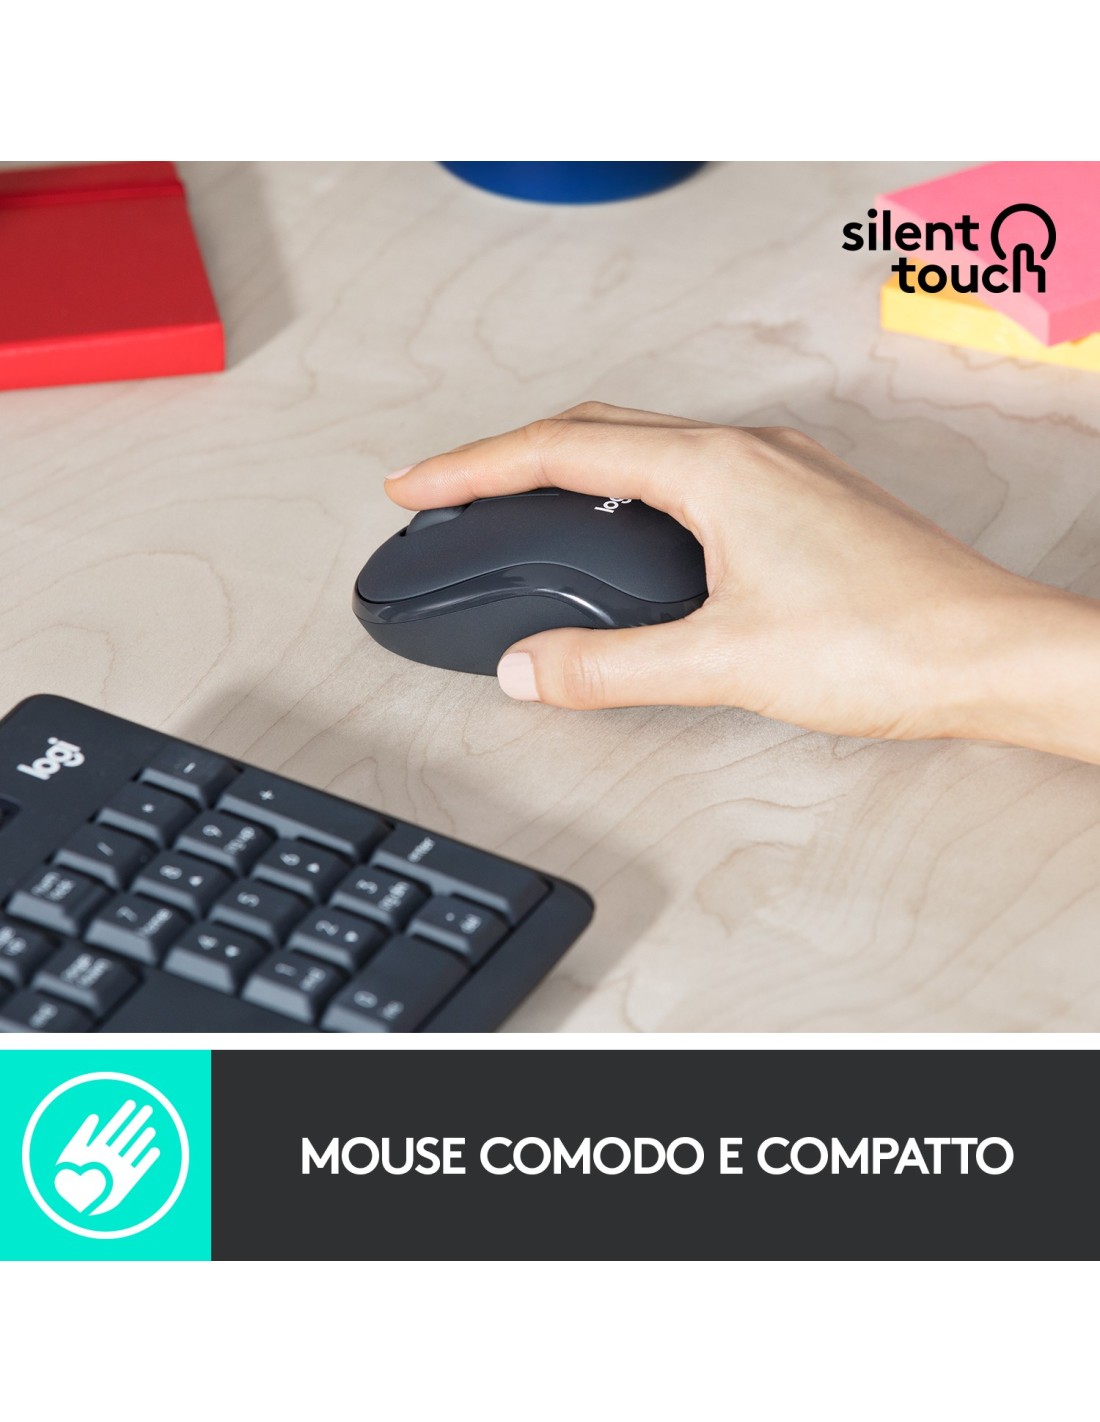 Logitech MK295 Kit Mouse e Tastiera Wireless – Tecnologia SilentTouch,  Tastierino Numerico, Tasti Scelta Rapida, Tracciamento Ottico Avanzato,  Ricevitore USB Nano, Senza Lag, Meno 90% di Rumore